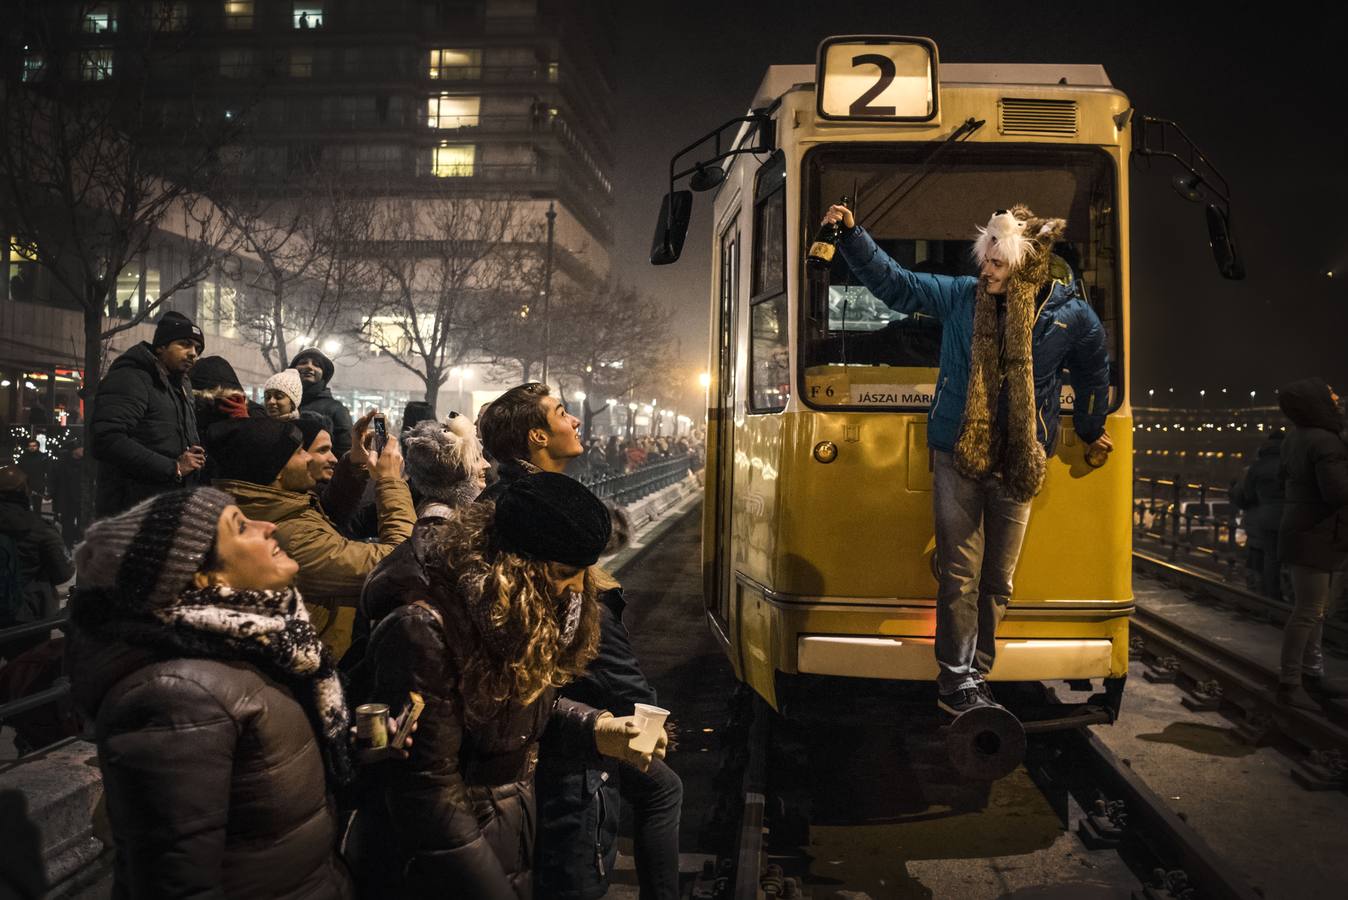 Una joven celebra la entrada del año 2017 subida en la parte frontal de un tranvía en Budapest, tras pararse éste por seguridad, ya que las vías se encontraban llenas de personas. 